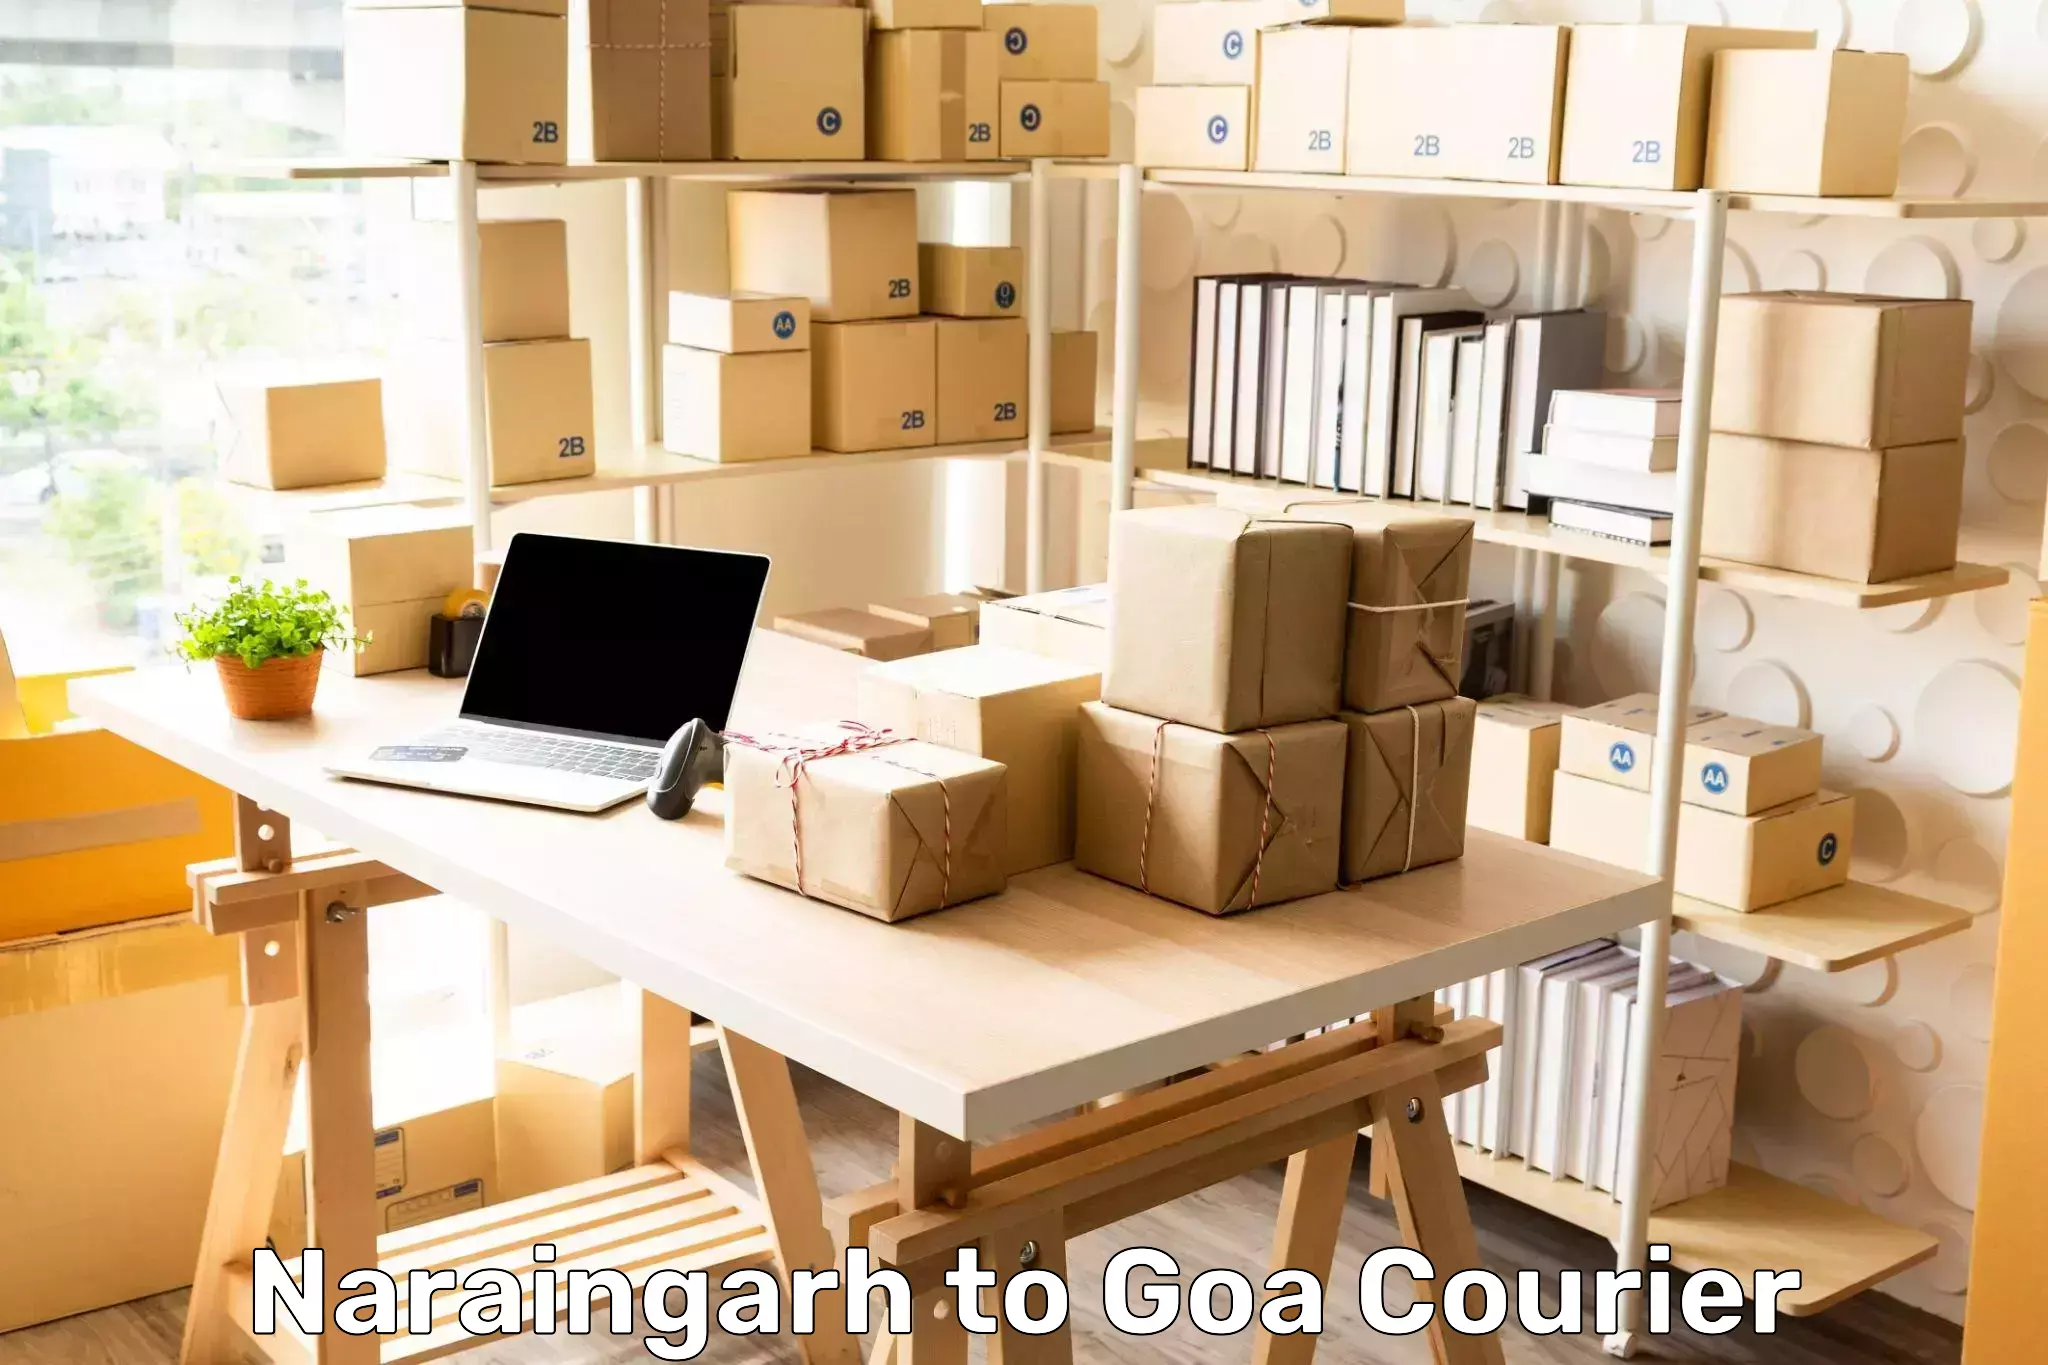 Package tracking Naraingarh to Panjim